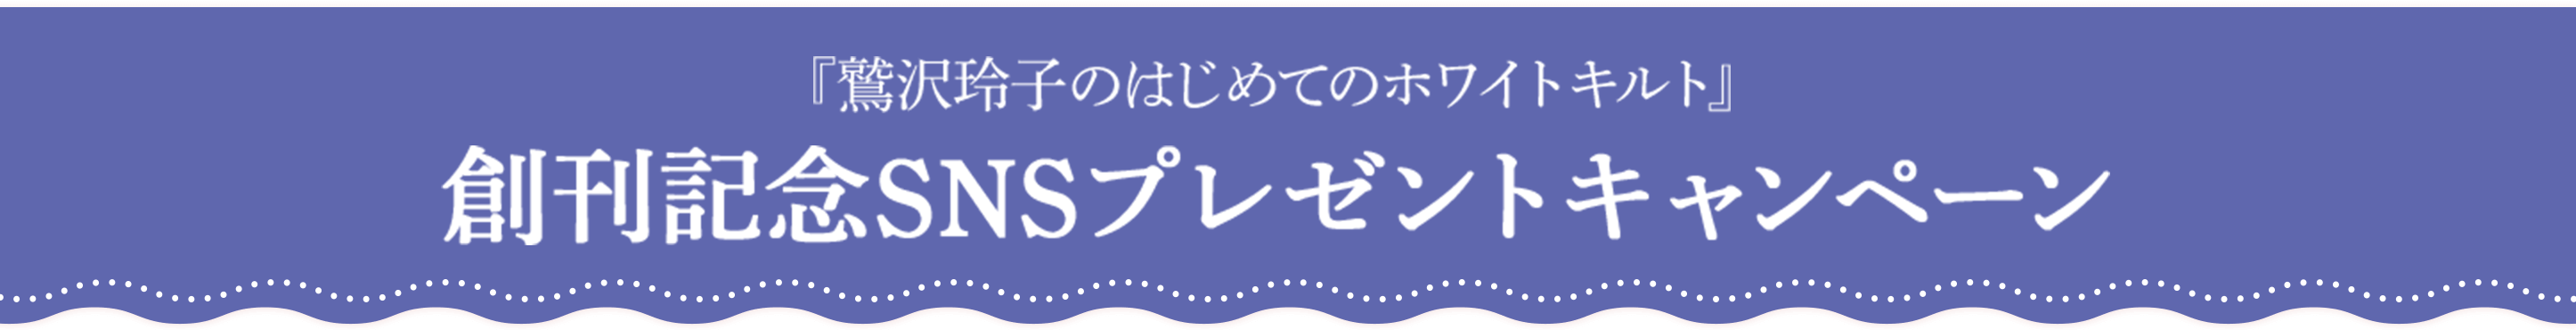 『鷲沢玲子のはじめてのホワイトキルト』創刊記念SNSプレゼントキャンペーン